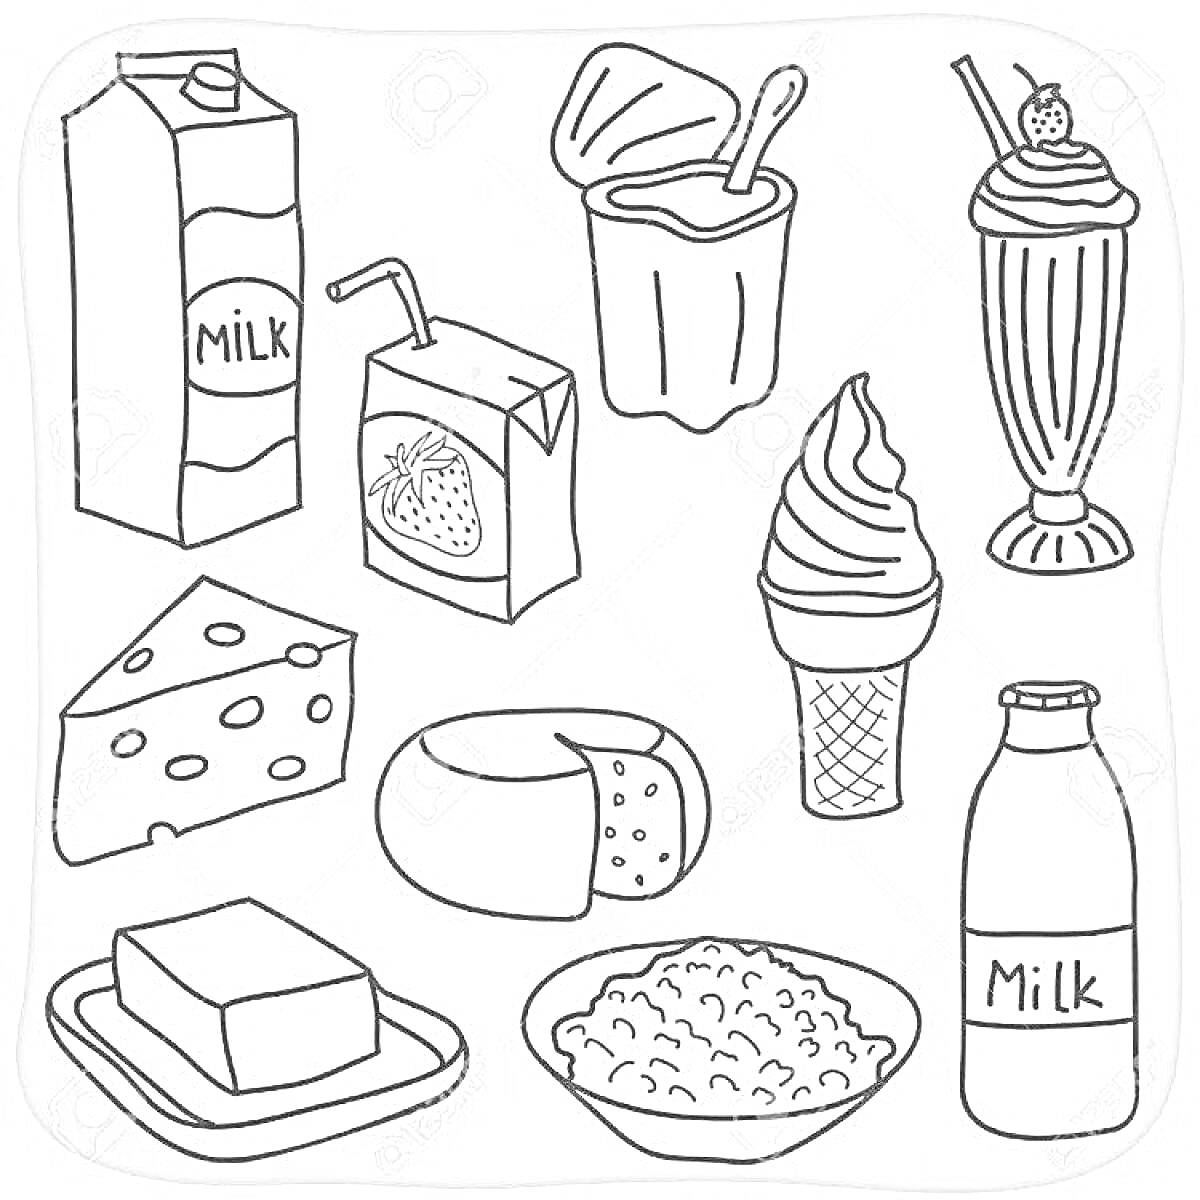 Картон молока, йогурт с ложкой, молочный коктейль с вишенкой, коробка сока с трубочкой, сыр с дырками, круглый сыр, мороженое в рожке, бутылка молока, масло на блюдце, творог в миске